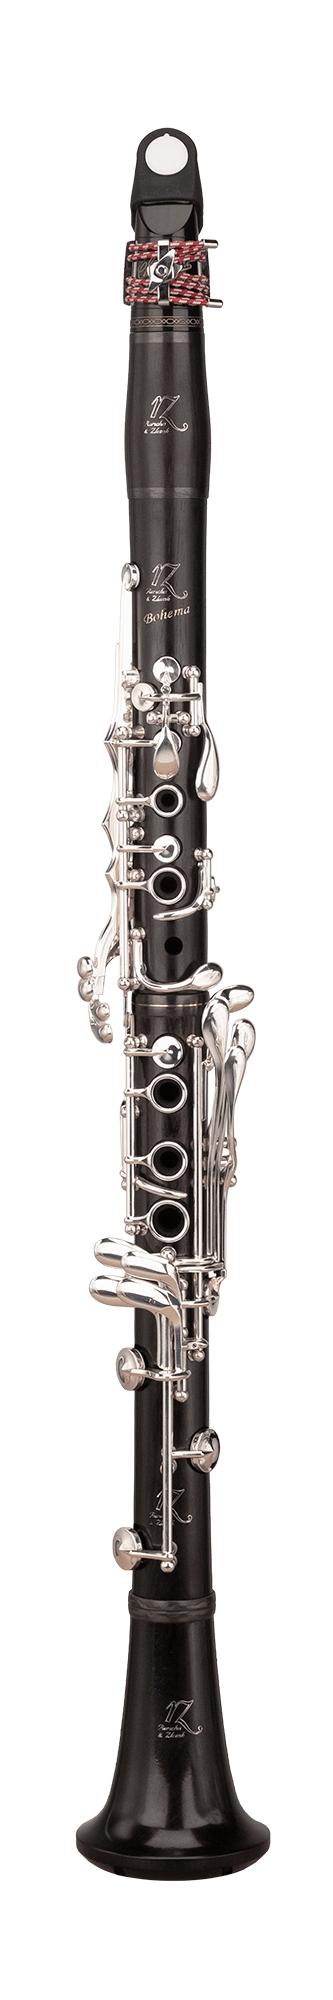 RZ Bohema er den første legendariske profesjonelle klarinettmodellen fra RZ.
Et instrument med en ekstraordinær kombinasjon av komfort, egal intonasjon og en vakker 